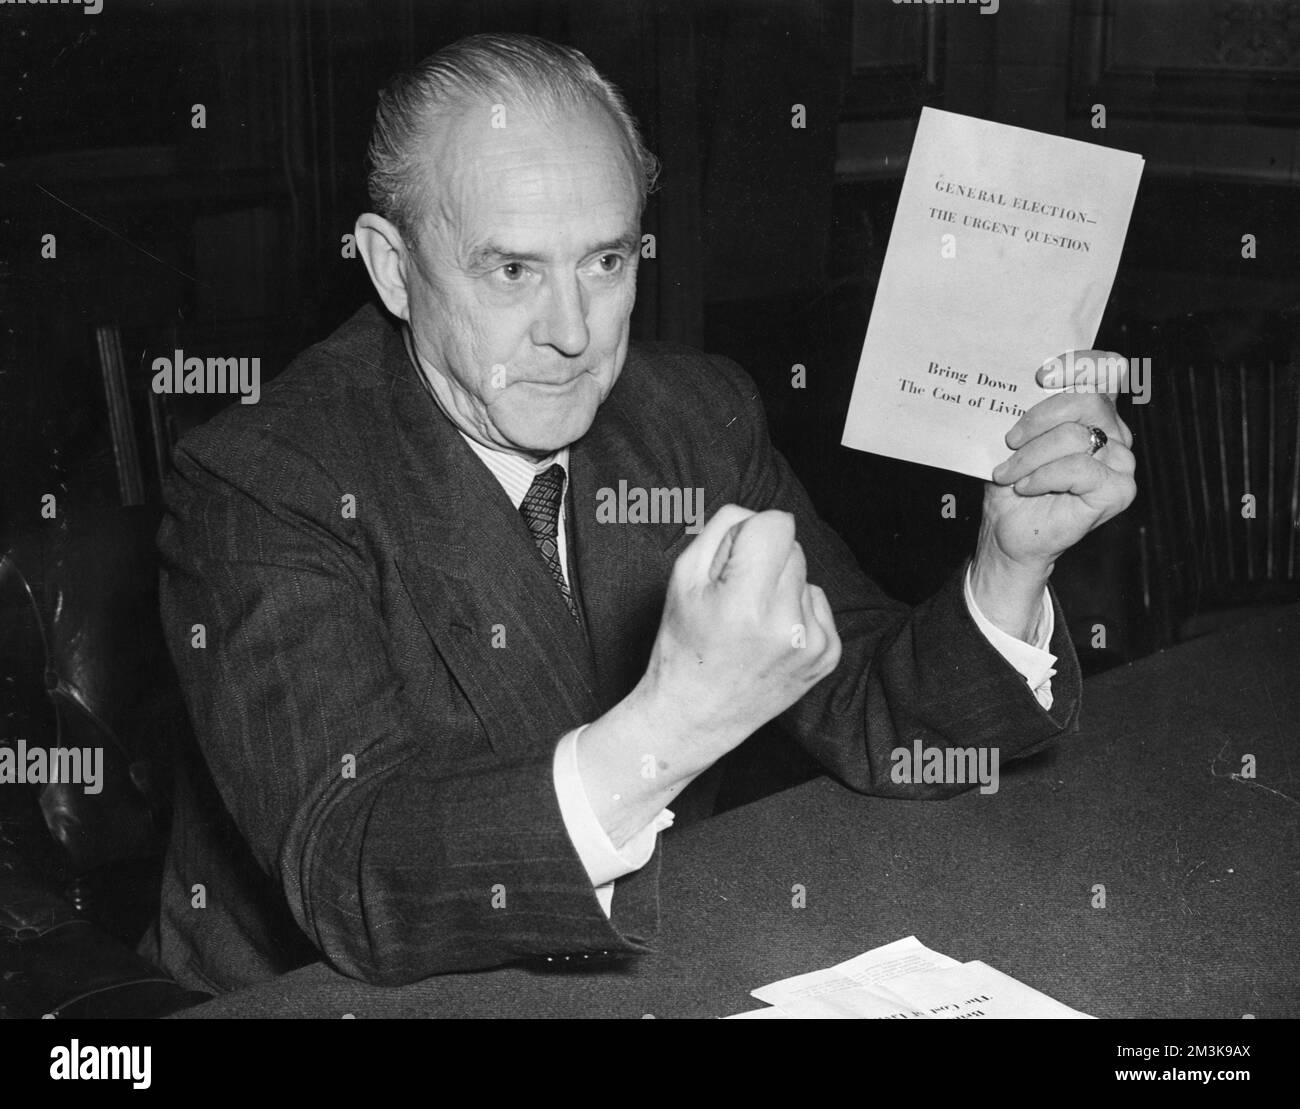 Clement Davies (1884-1962) politicien anglais et chef du Parti libéral de 1945 à 1956, vu ici lors de la conférence de presse électorale du 3rd octobre 1951 Date : 3rd octobre 1951 Banque D'Images